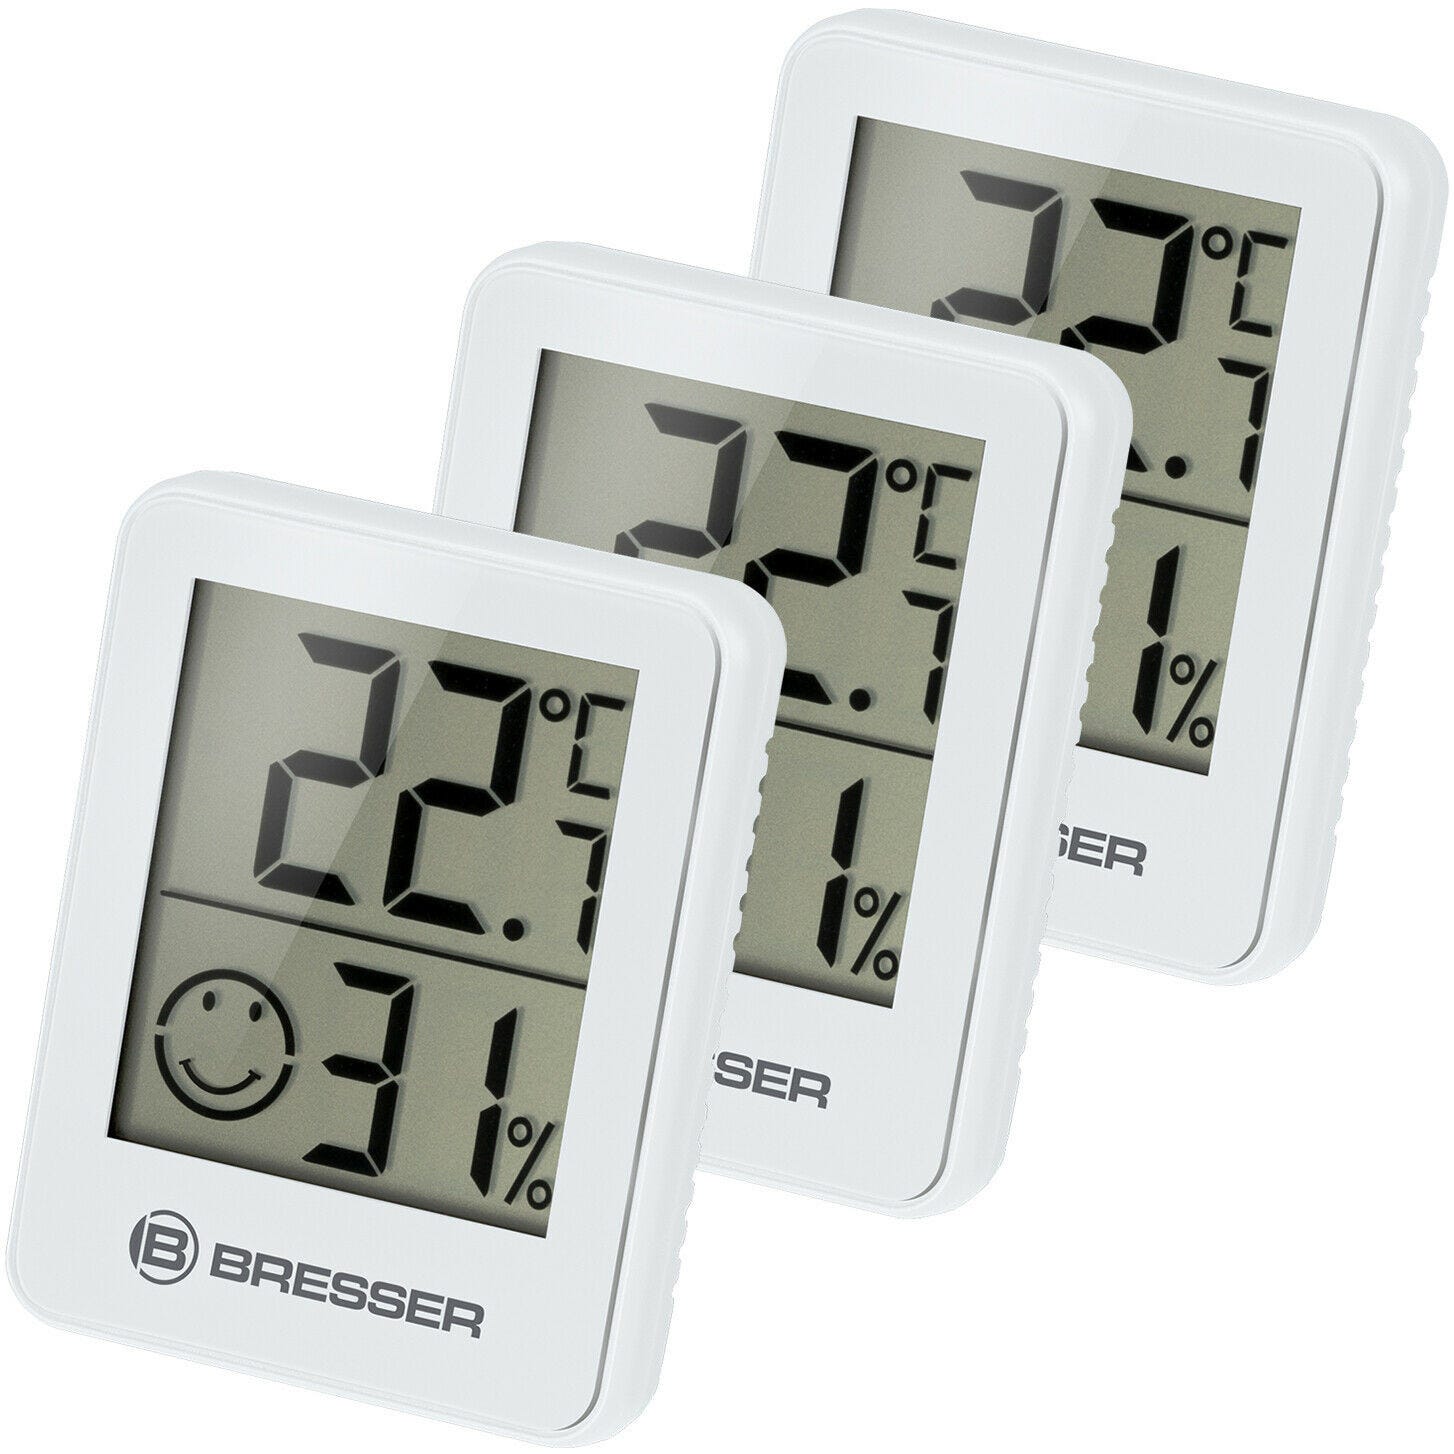 FENSOL Lot de 3 thermomètres hygromètre intérieur numérique LCD